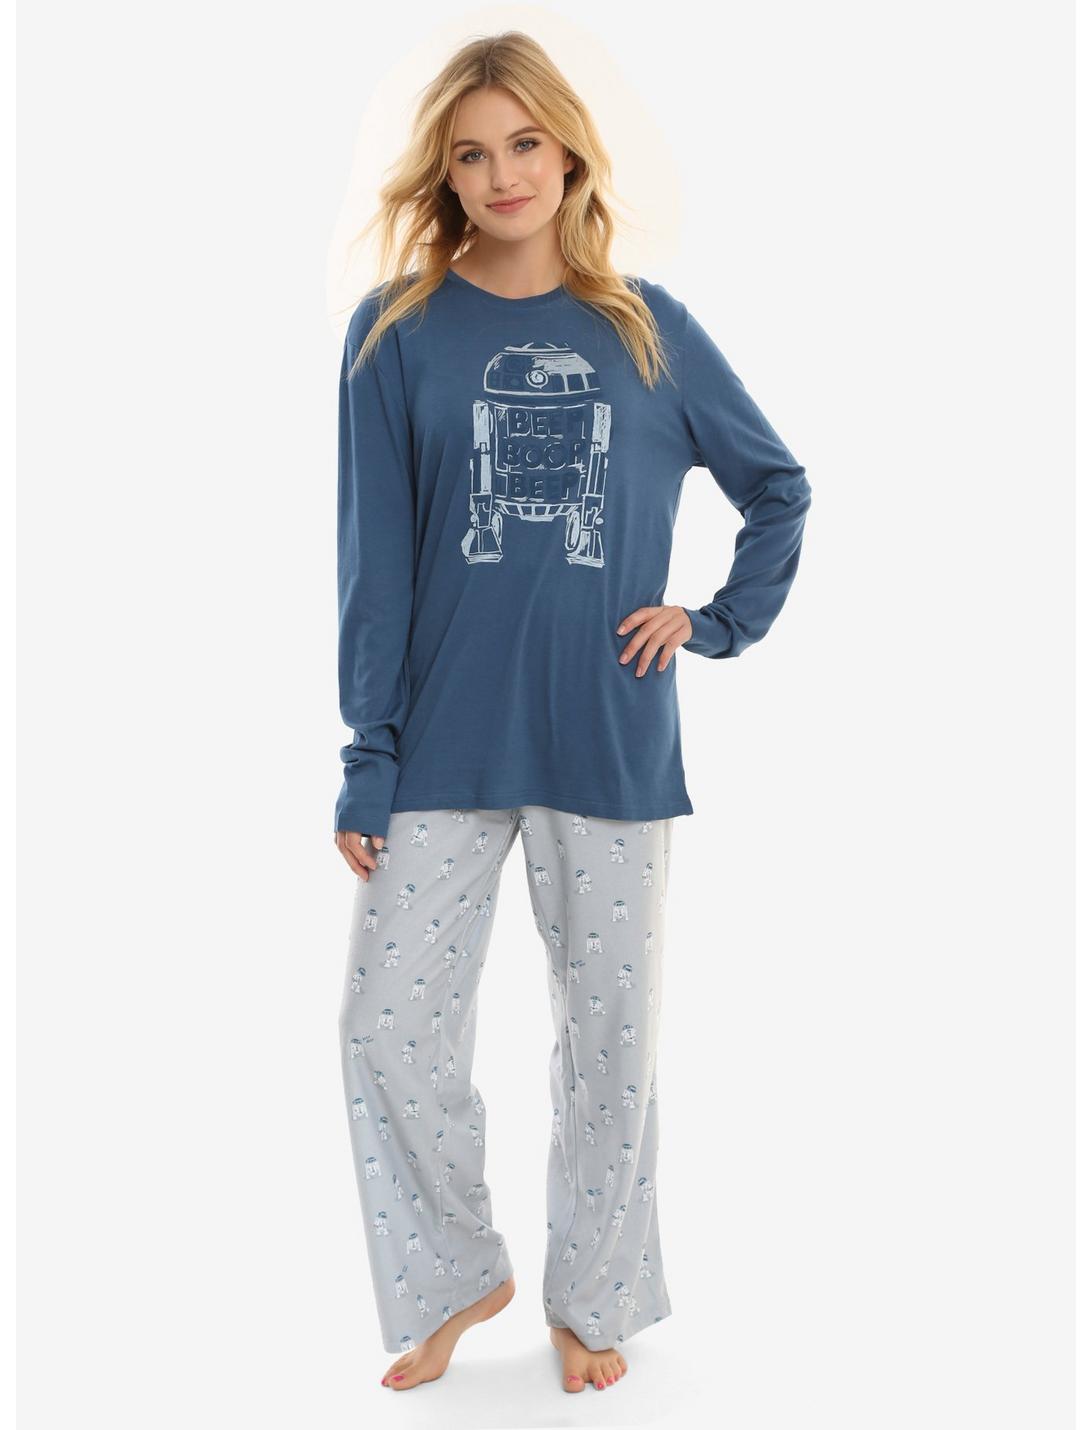 Munki Munki R2-D2 Sleep Set, BLUE, hi-res